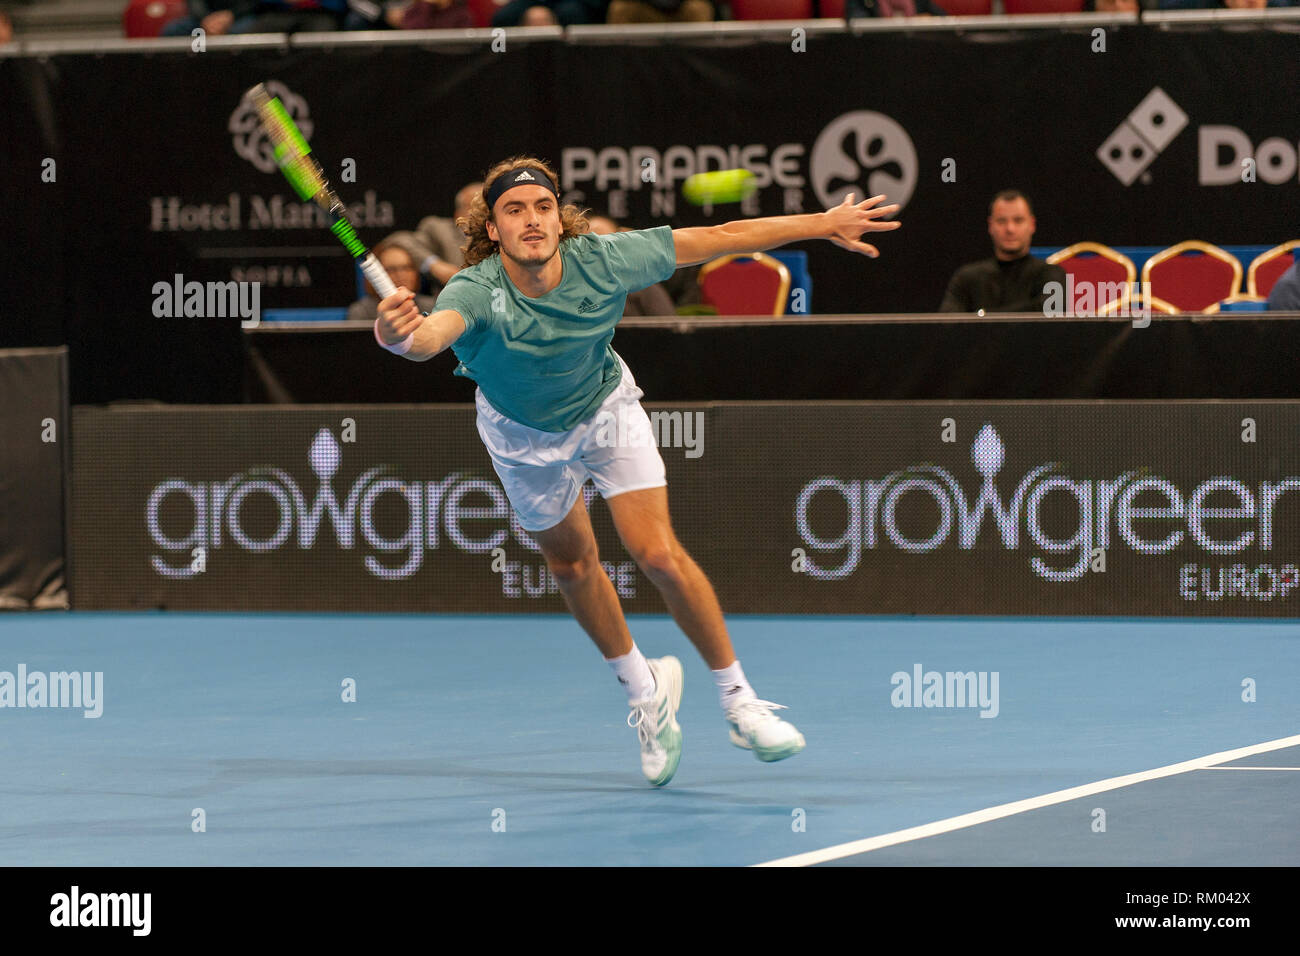 SOFIA - FÉVRIER 07,2019 : Stefanos Tsitsipas(GRE) joue à l'ATP tournoi Open de Sofia à Sofia, Bulgarie le 05 février 2019 - Image Banque D'Images